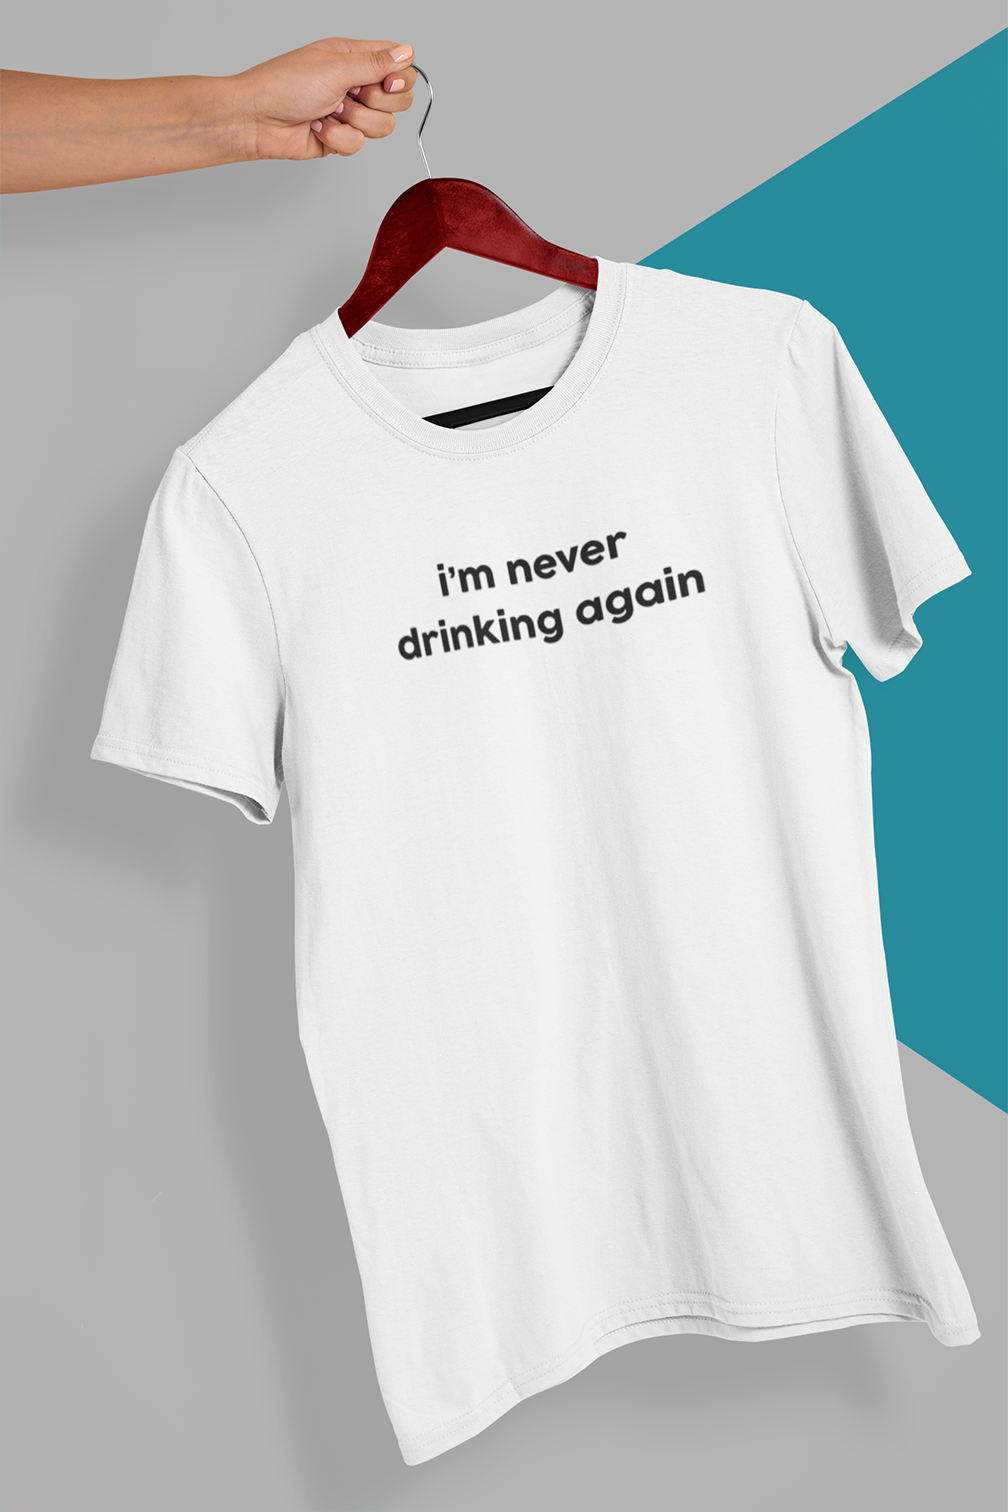 I'm never drinking again T-shirt - Urbantshirts.co.uk